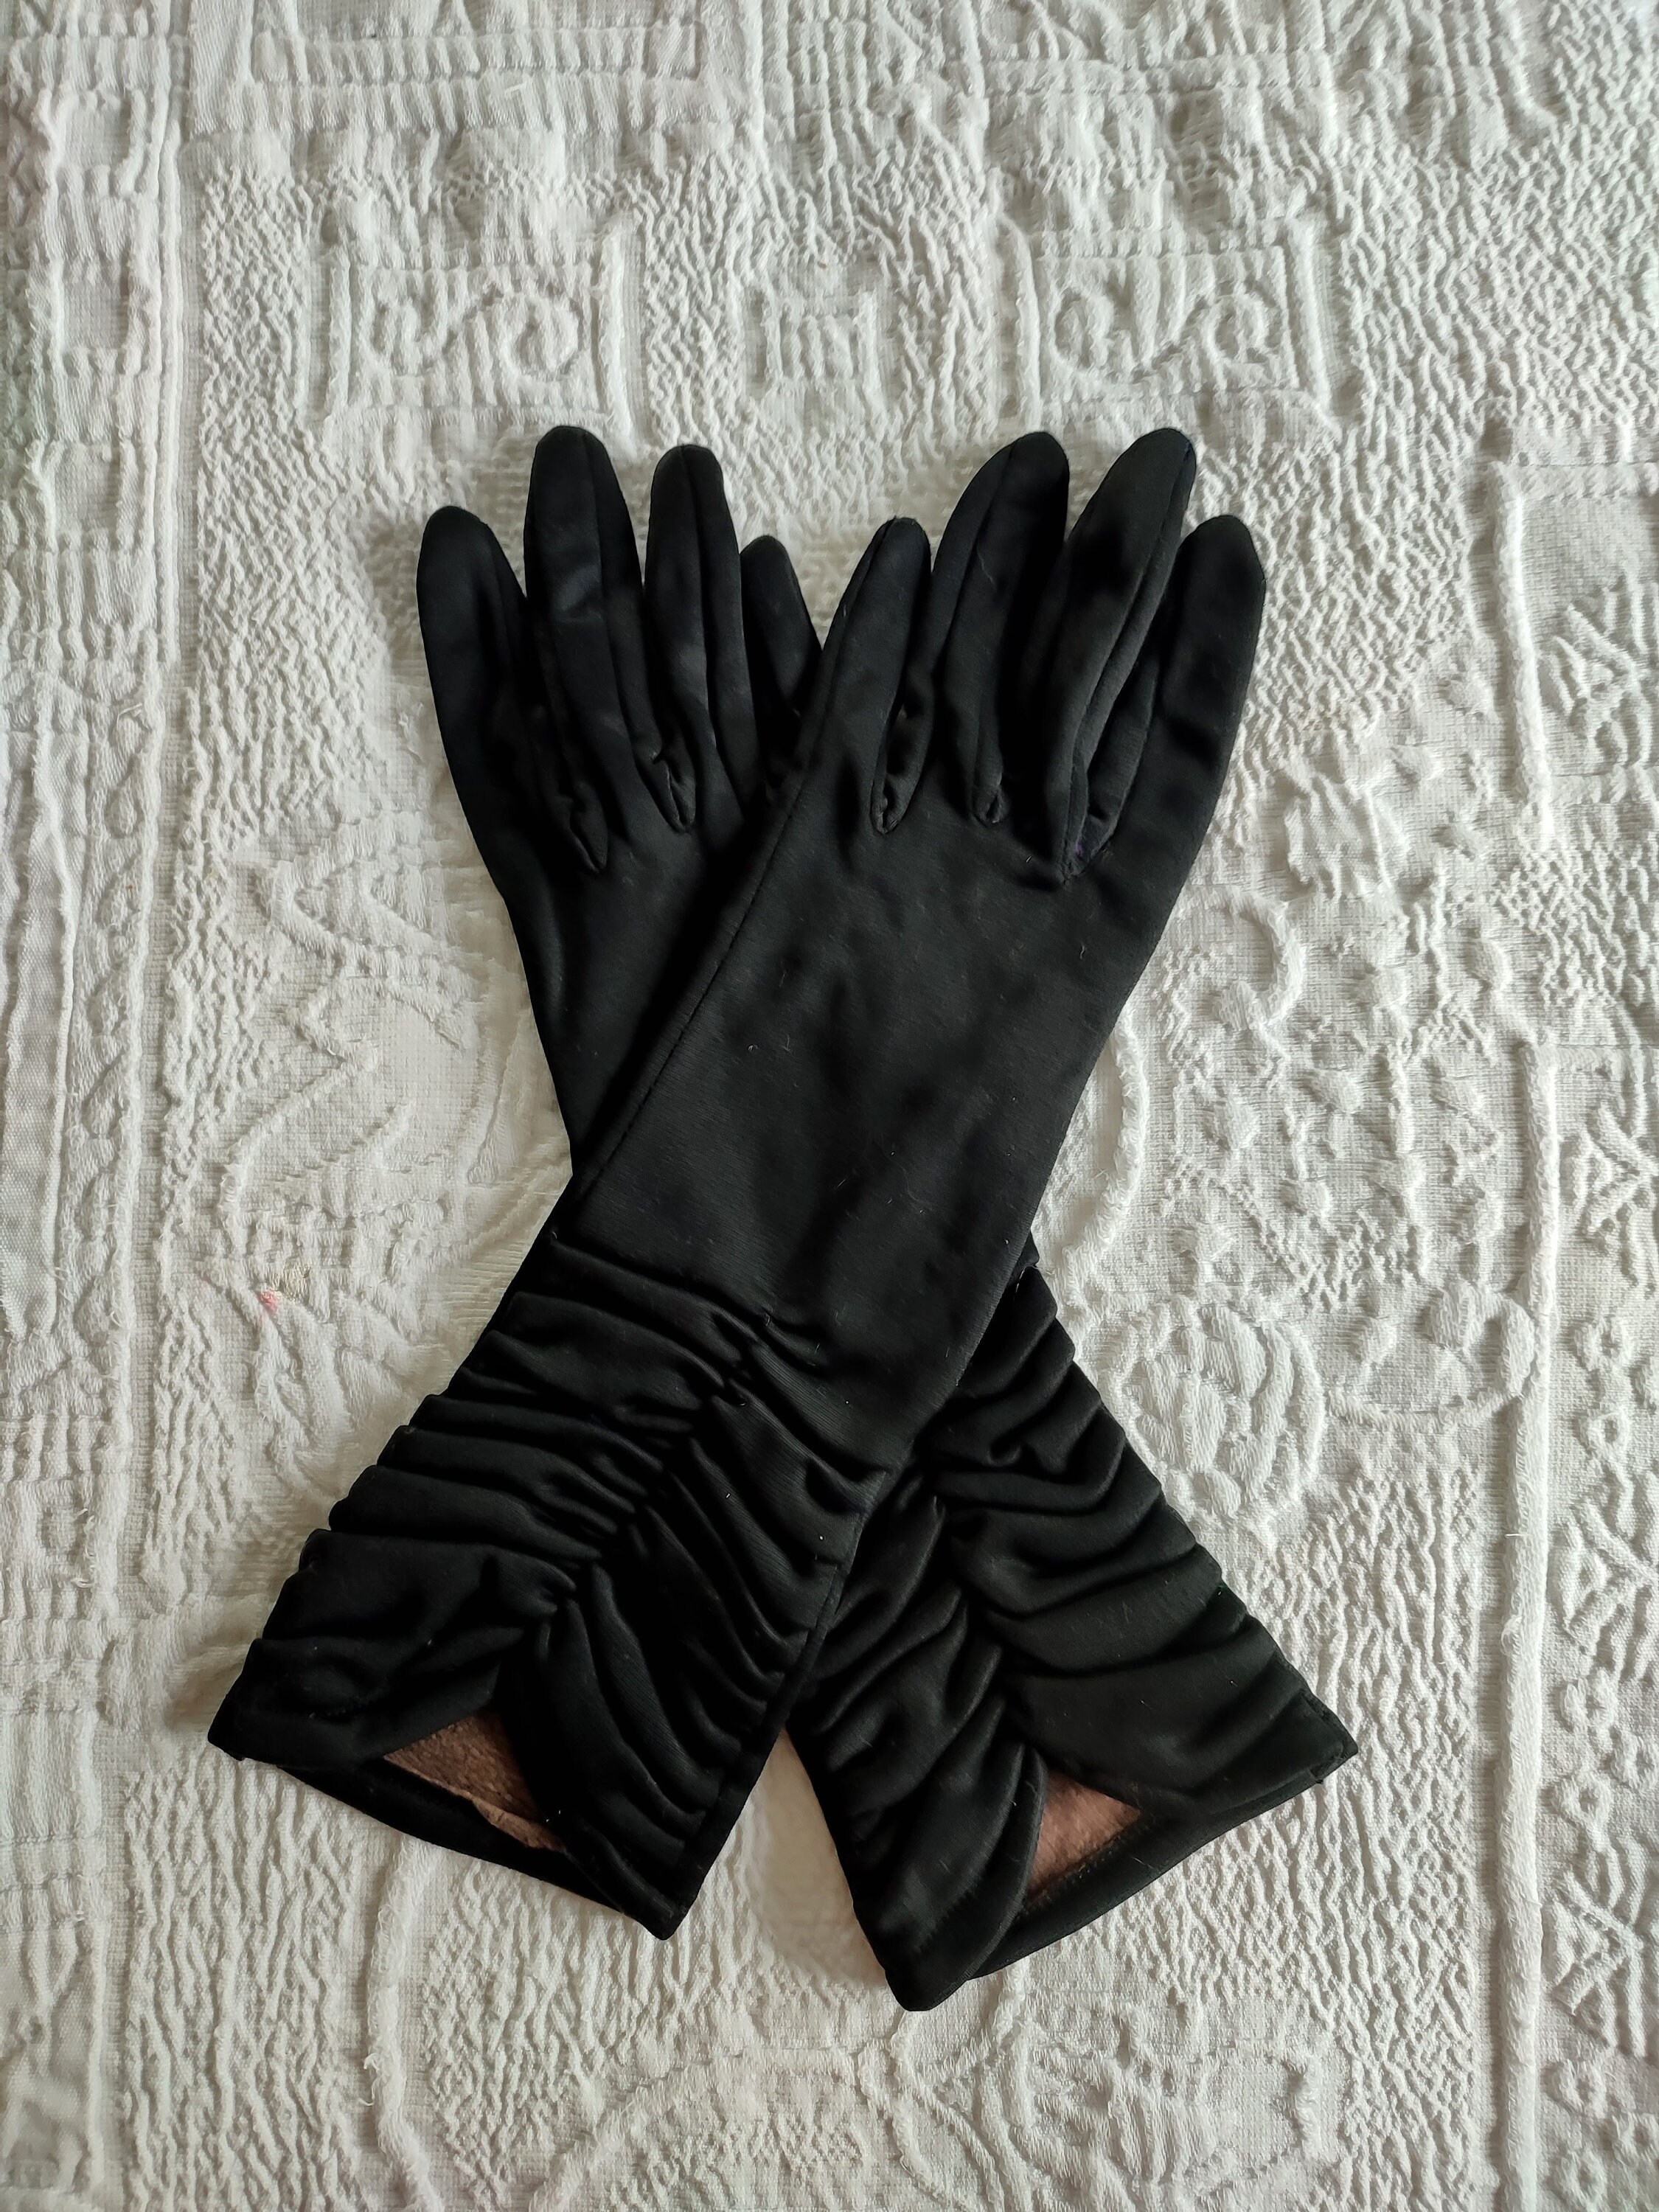 Vintage Black Winter Gloves Black Gloves Warm Gloves Long - Etsy UK